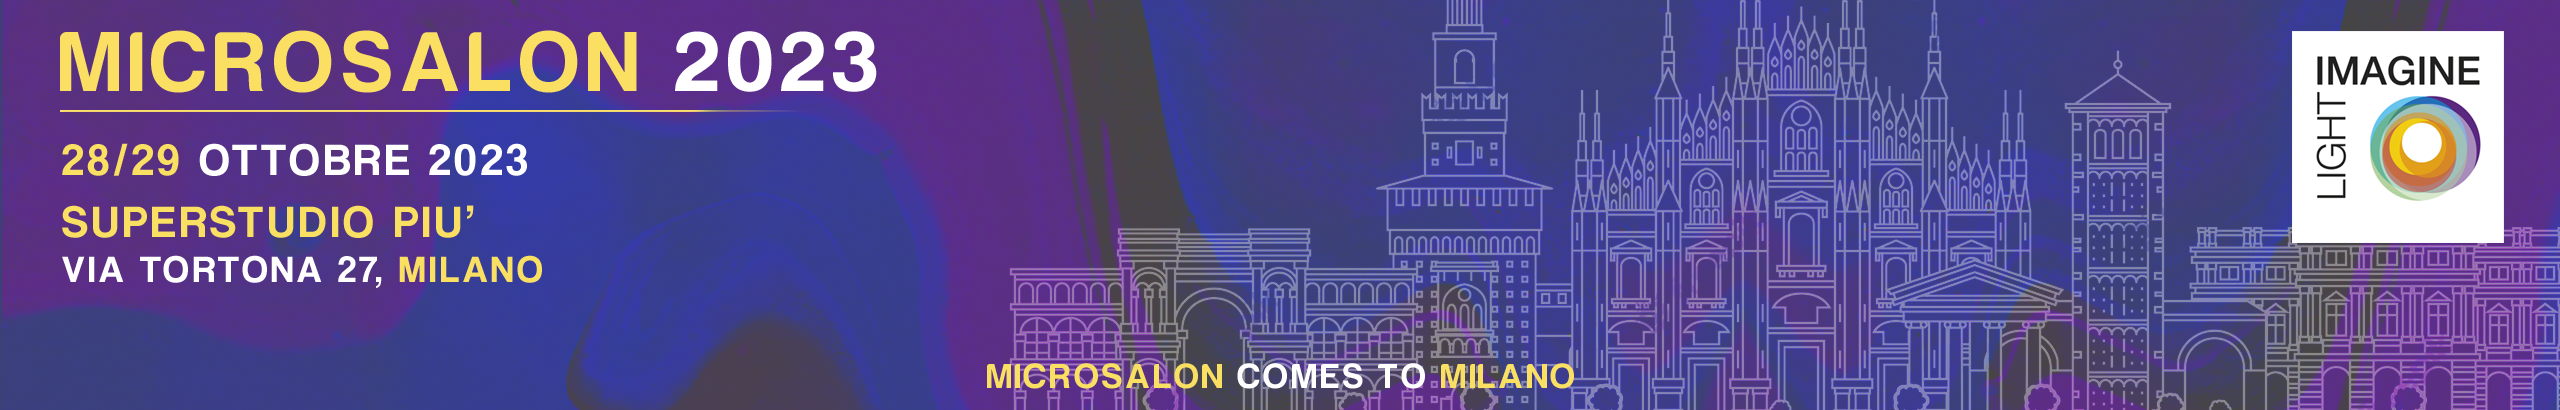 Microsalon-Milano-2023